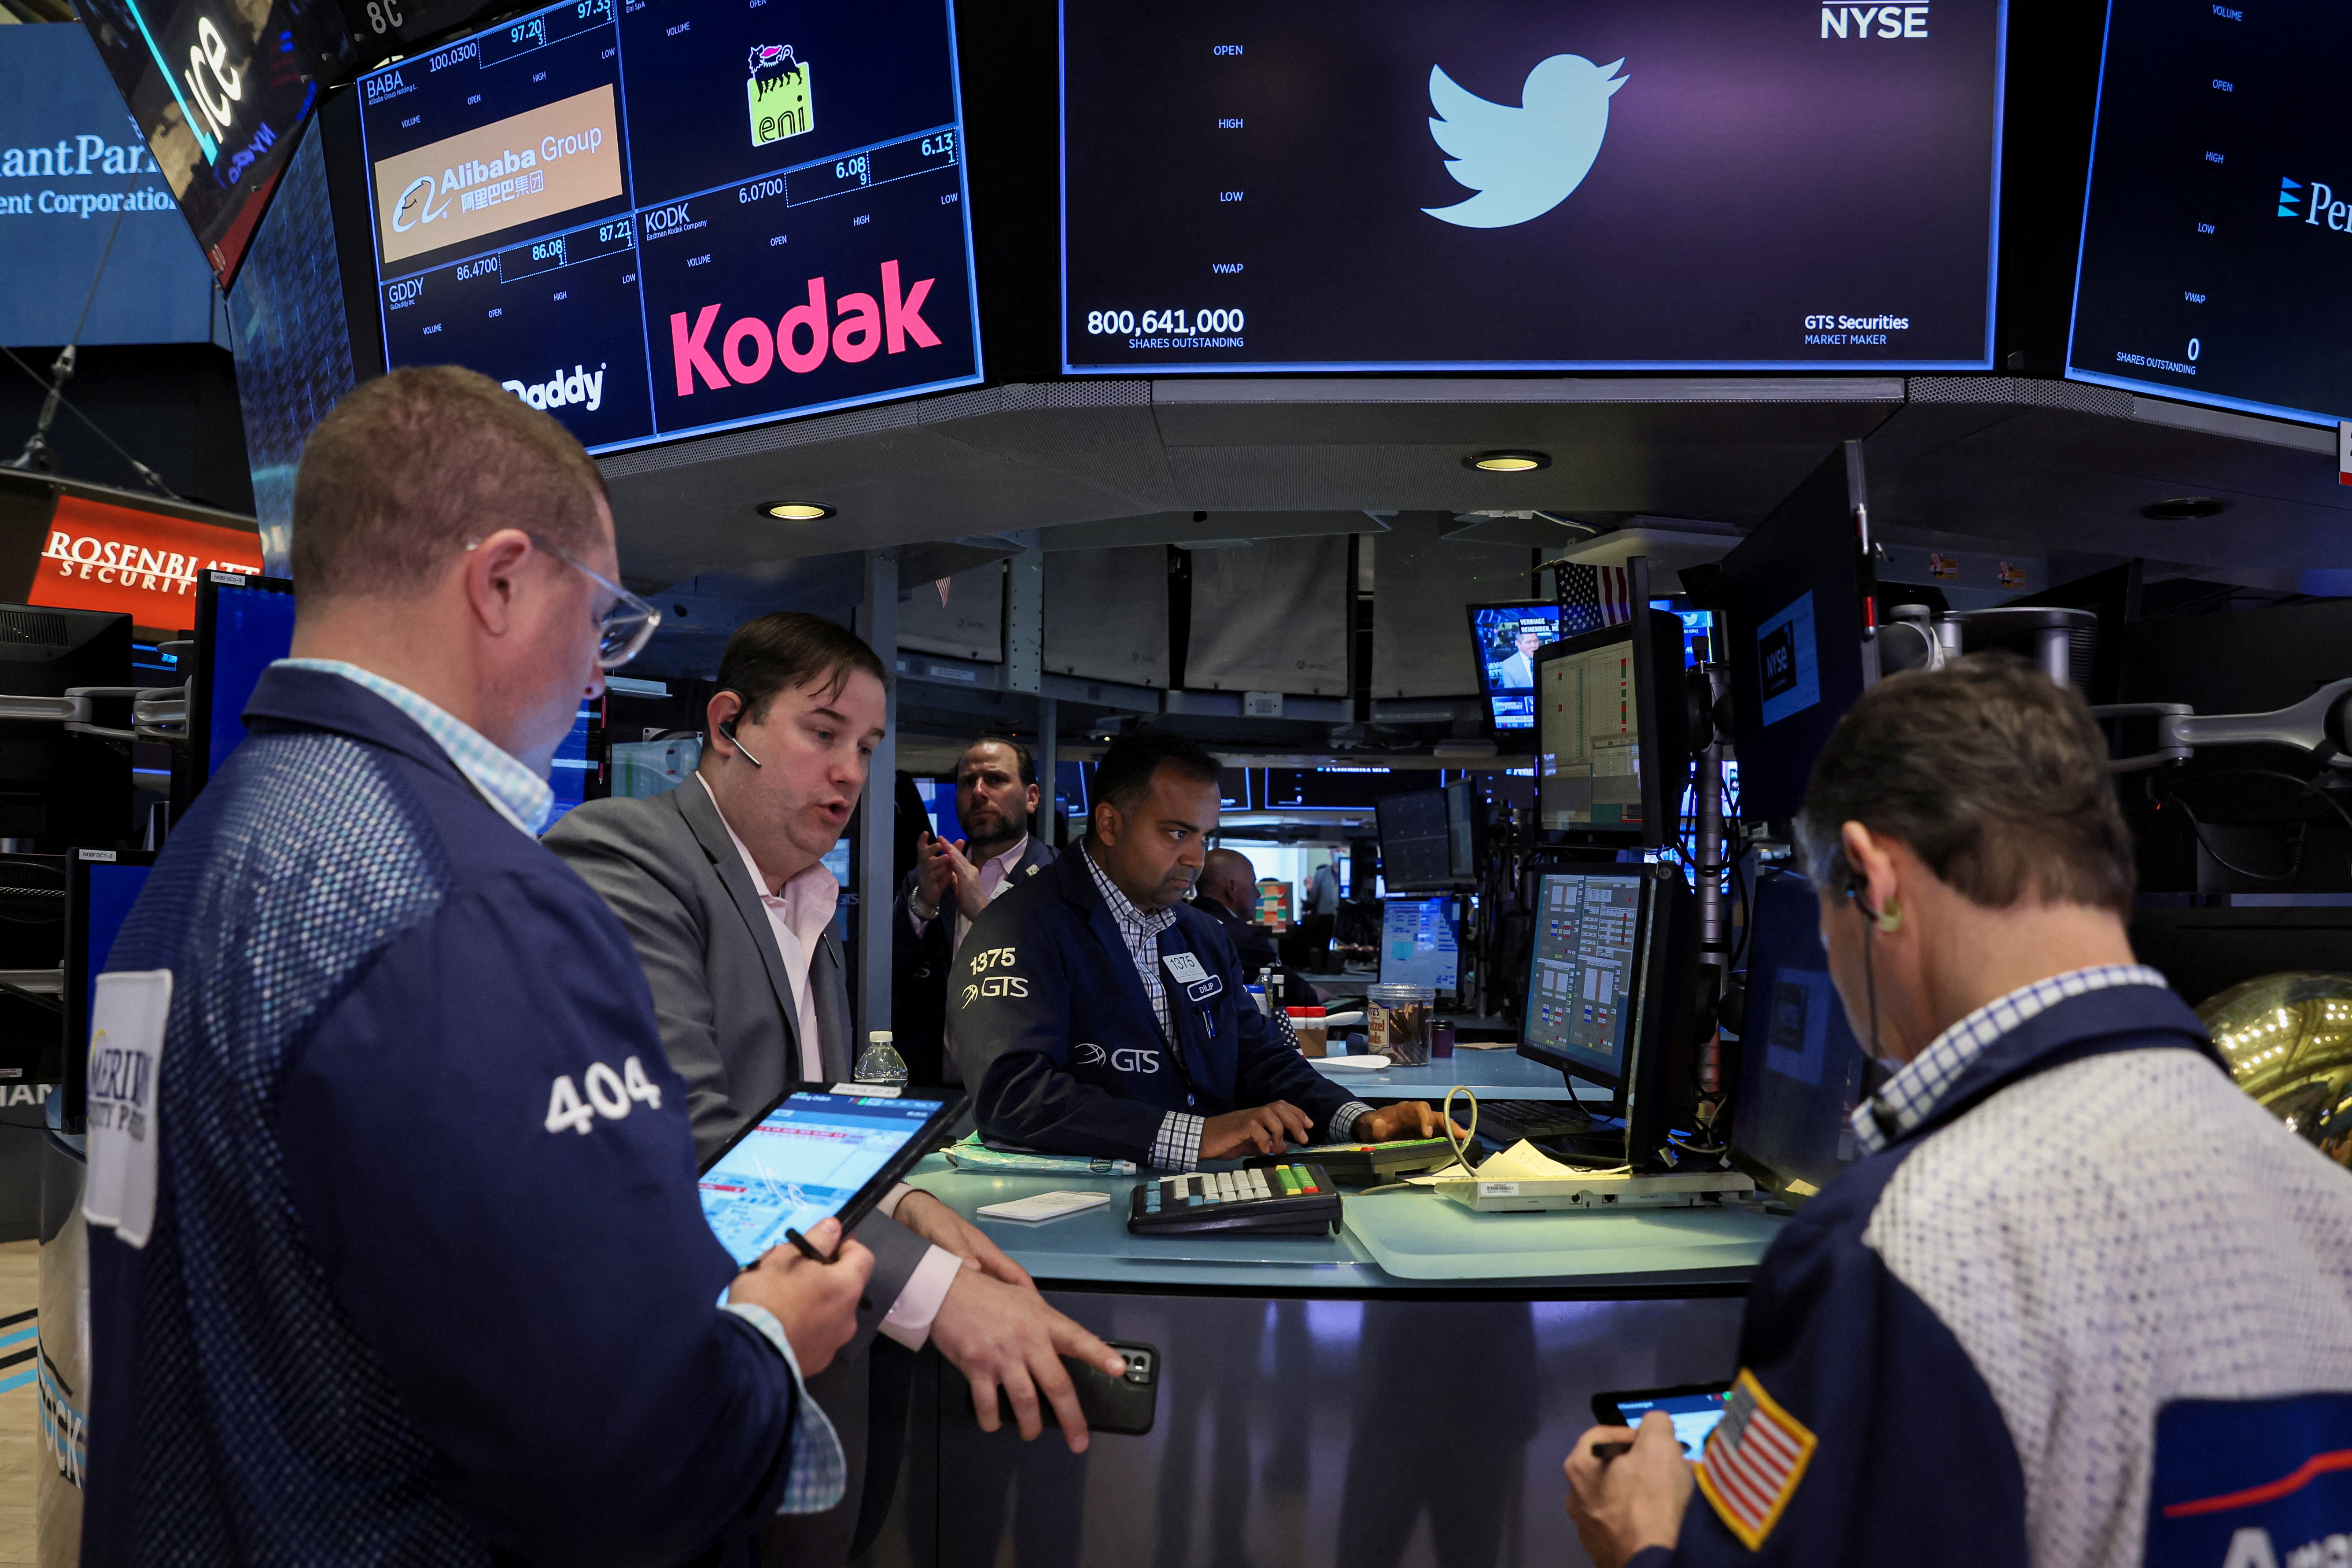 Las acciones de Twitter serán un punto muy sensible en los próximos días (REUTERS/Brendan McDermid)